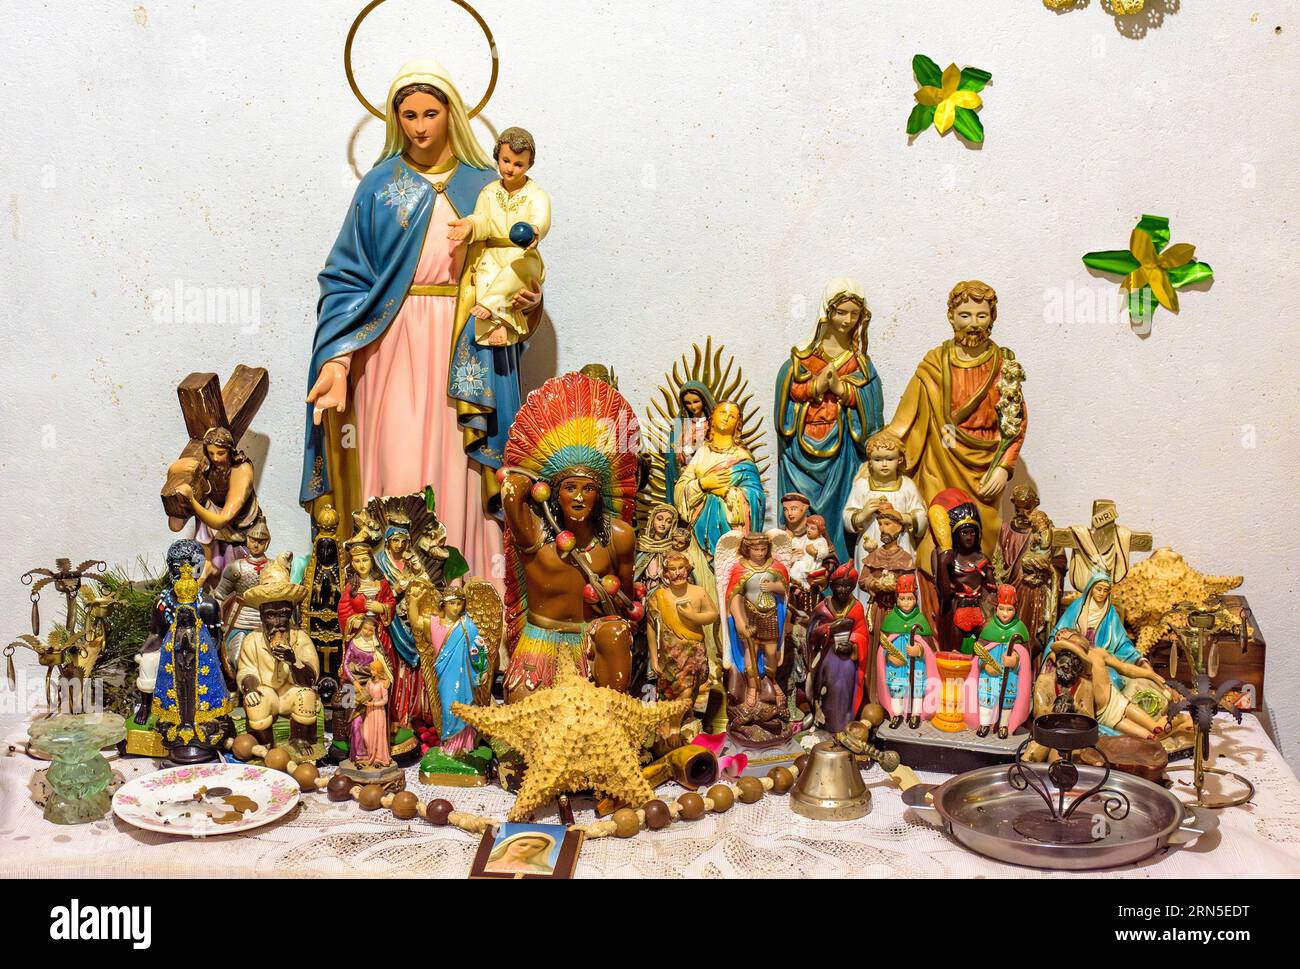 Autel avec plusieurs images de saints, d'entités de religions d'origine africaine comme Umbanda et Candomble et des objets du quotidien dans un bien Banque D'Images